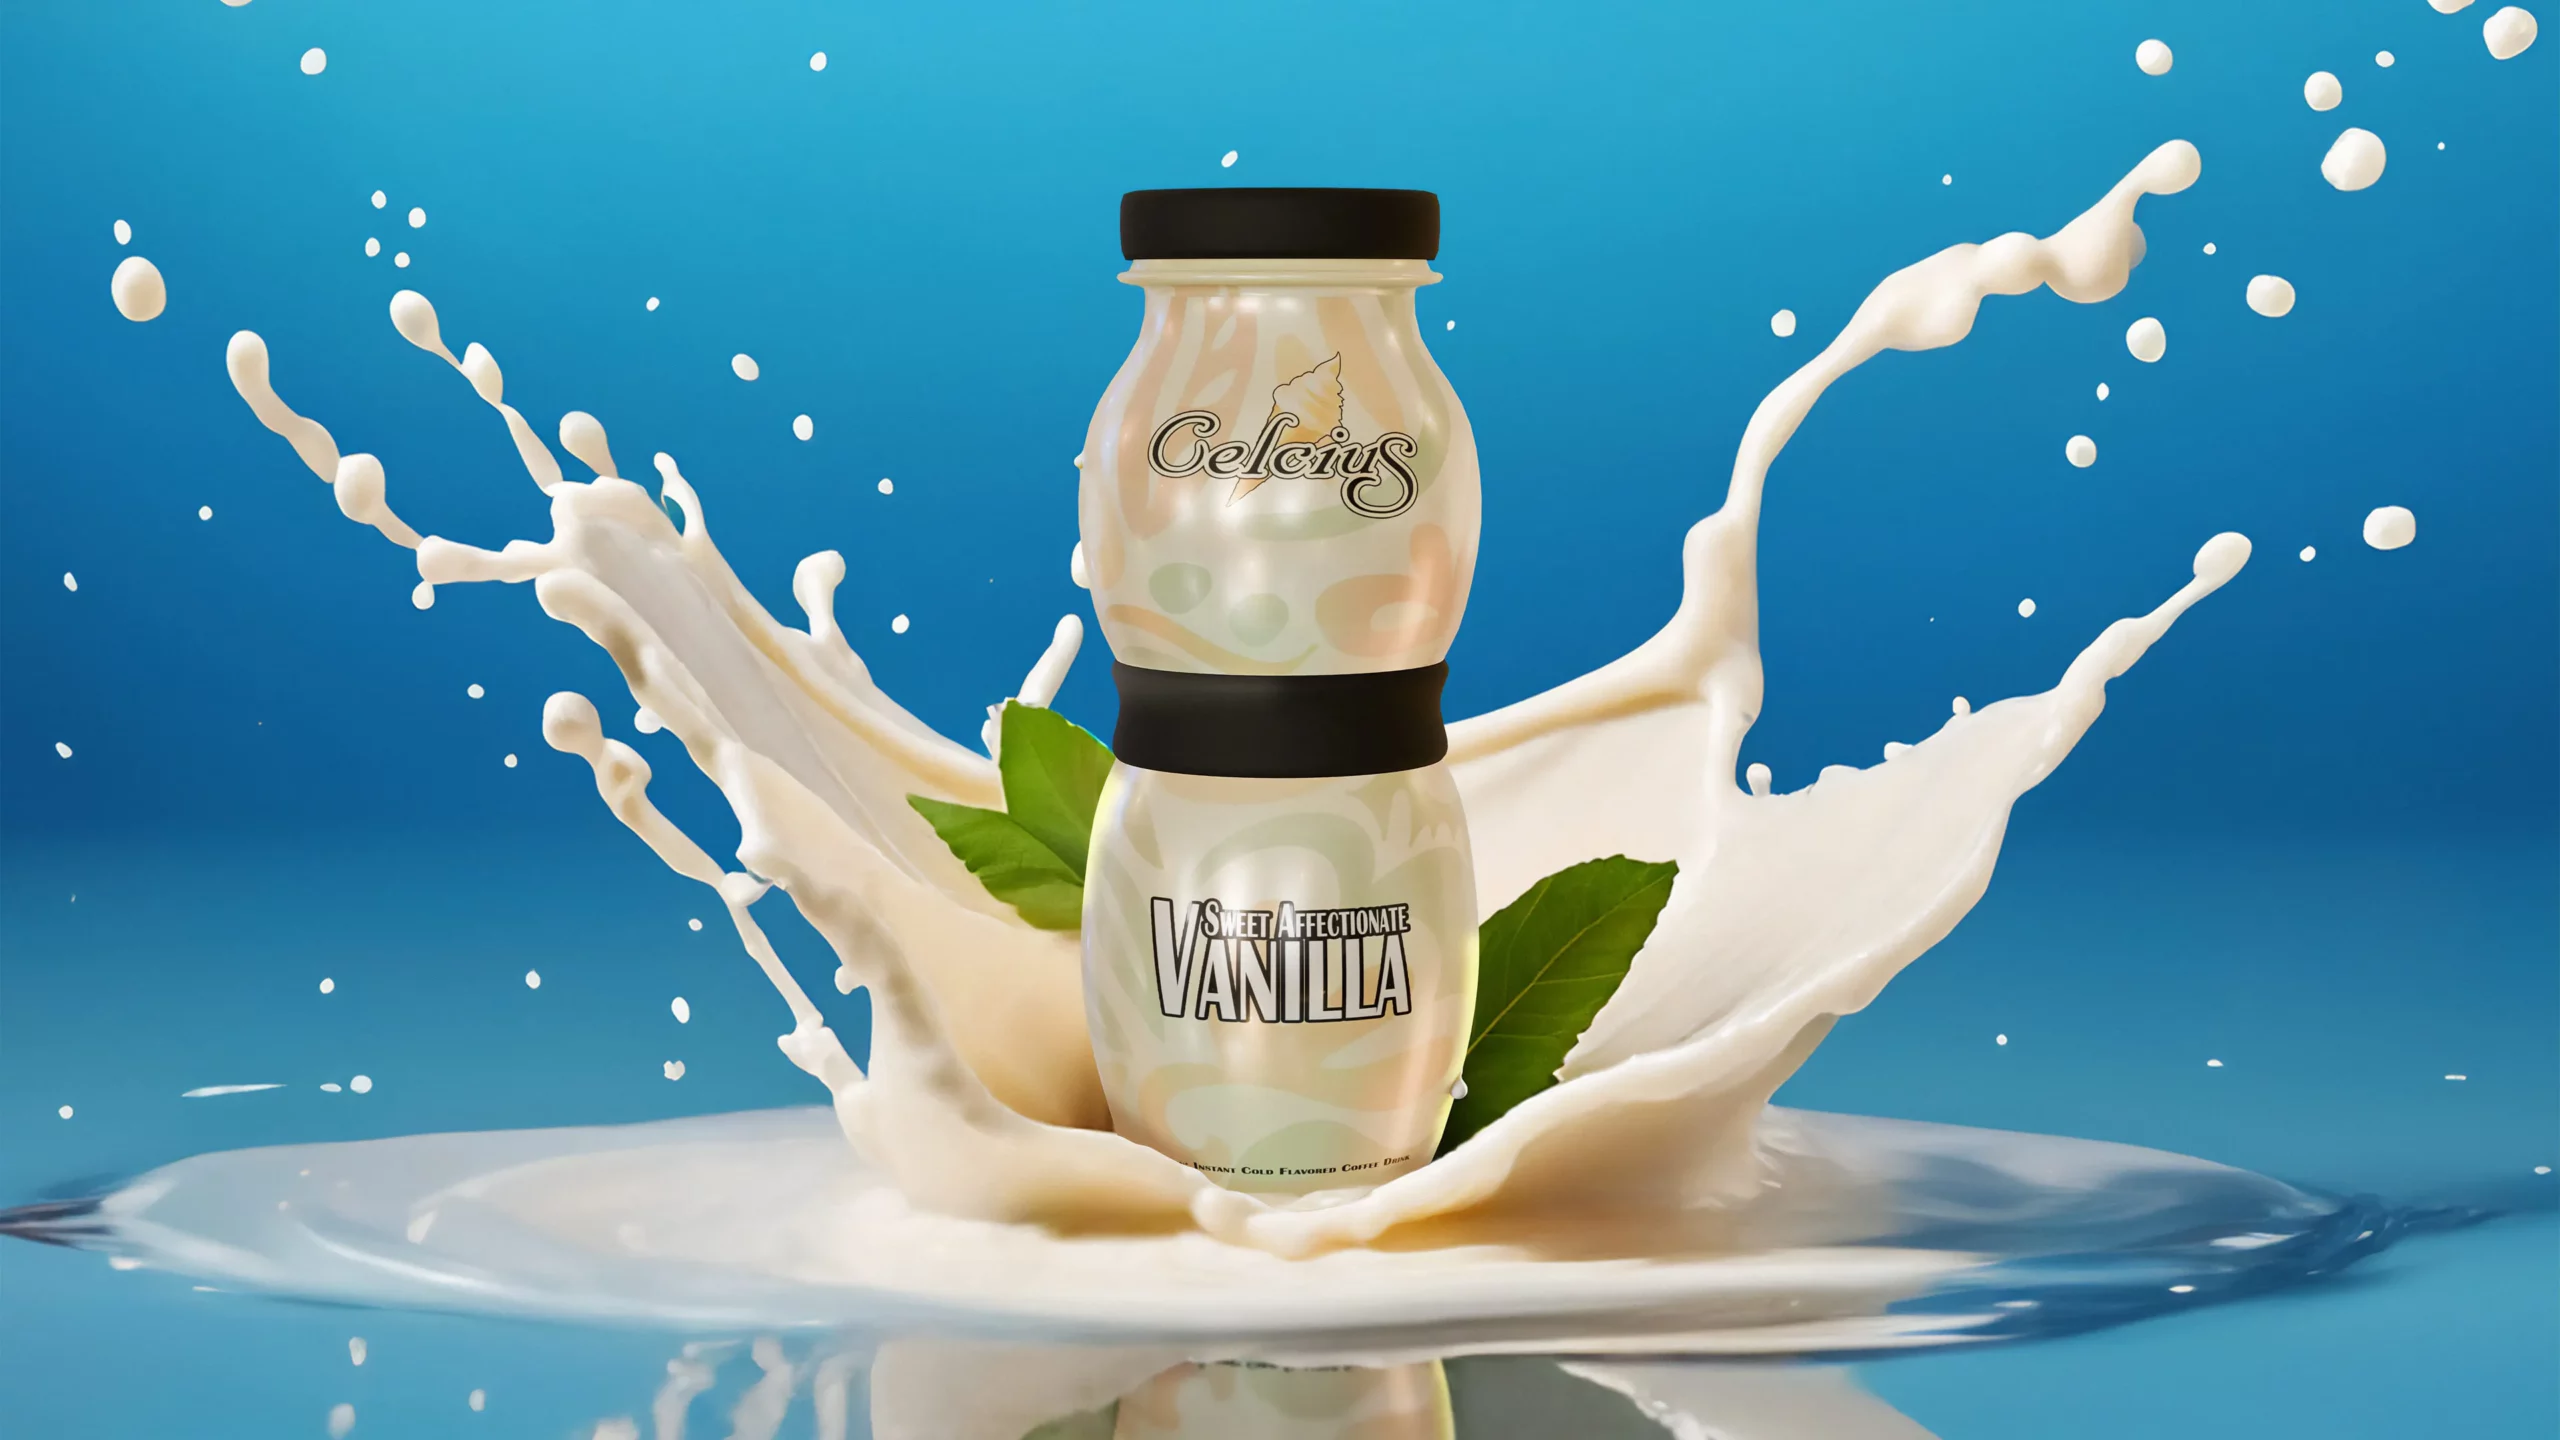 Celcius - Vanilla